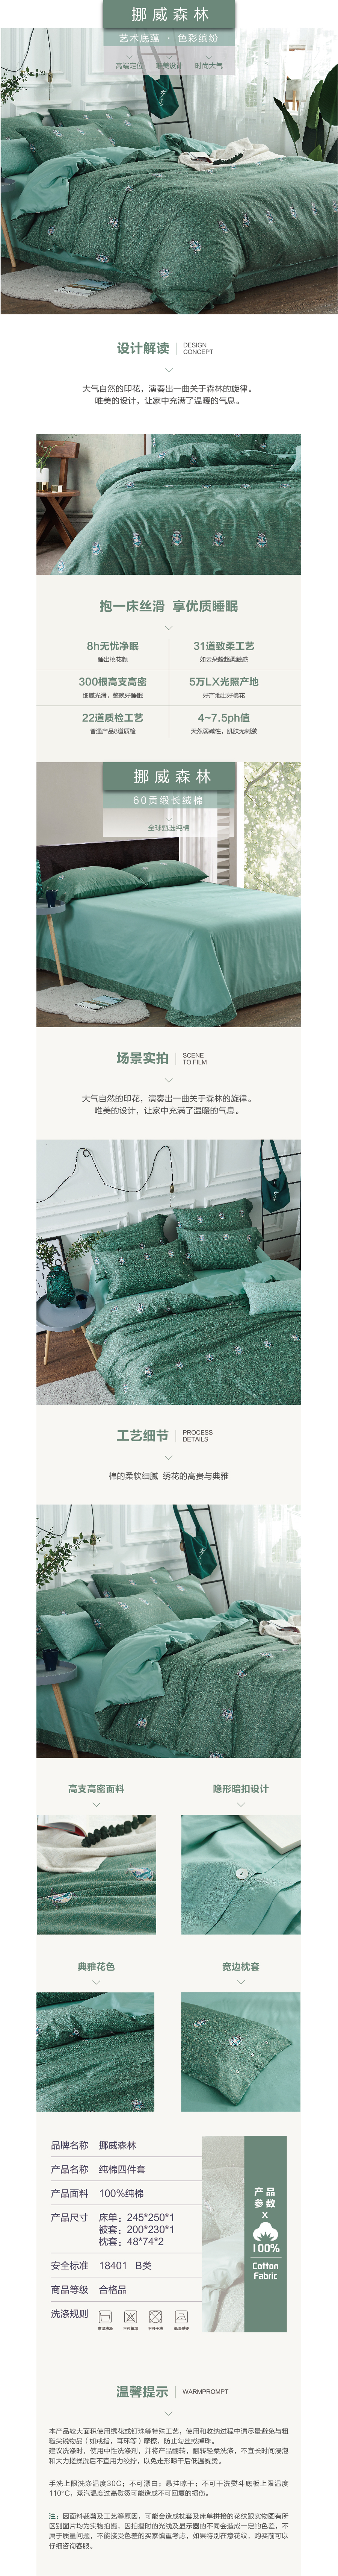 床上用品 纯棉四件套 蕾丝工艺 60贡缎长绒棉系列 挪威森林